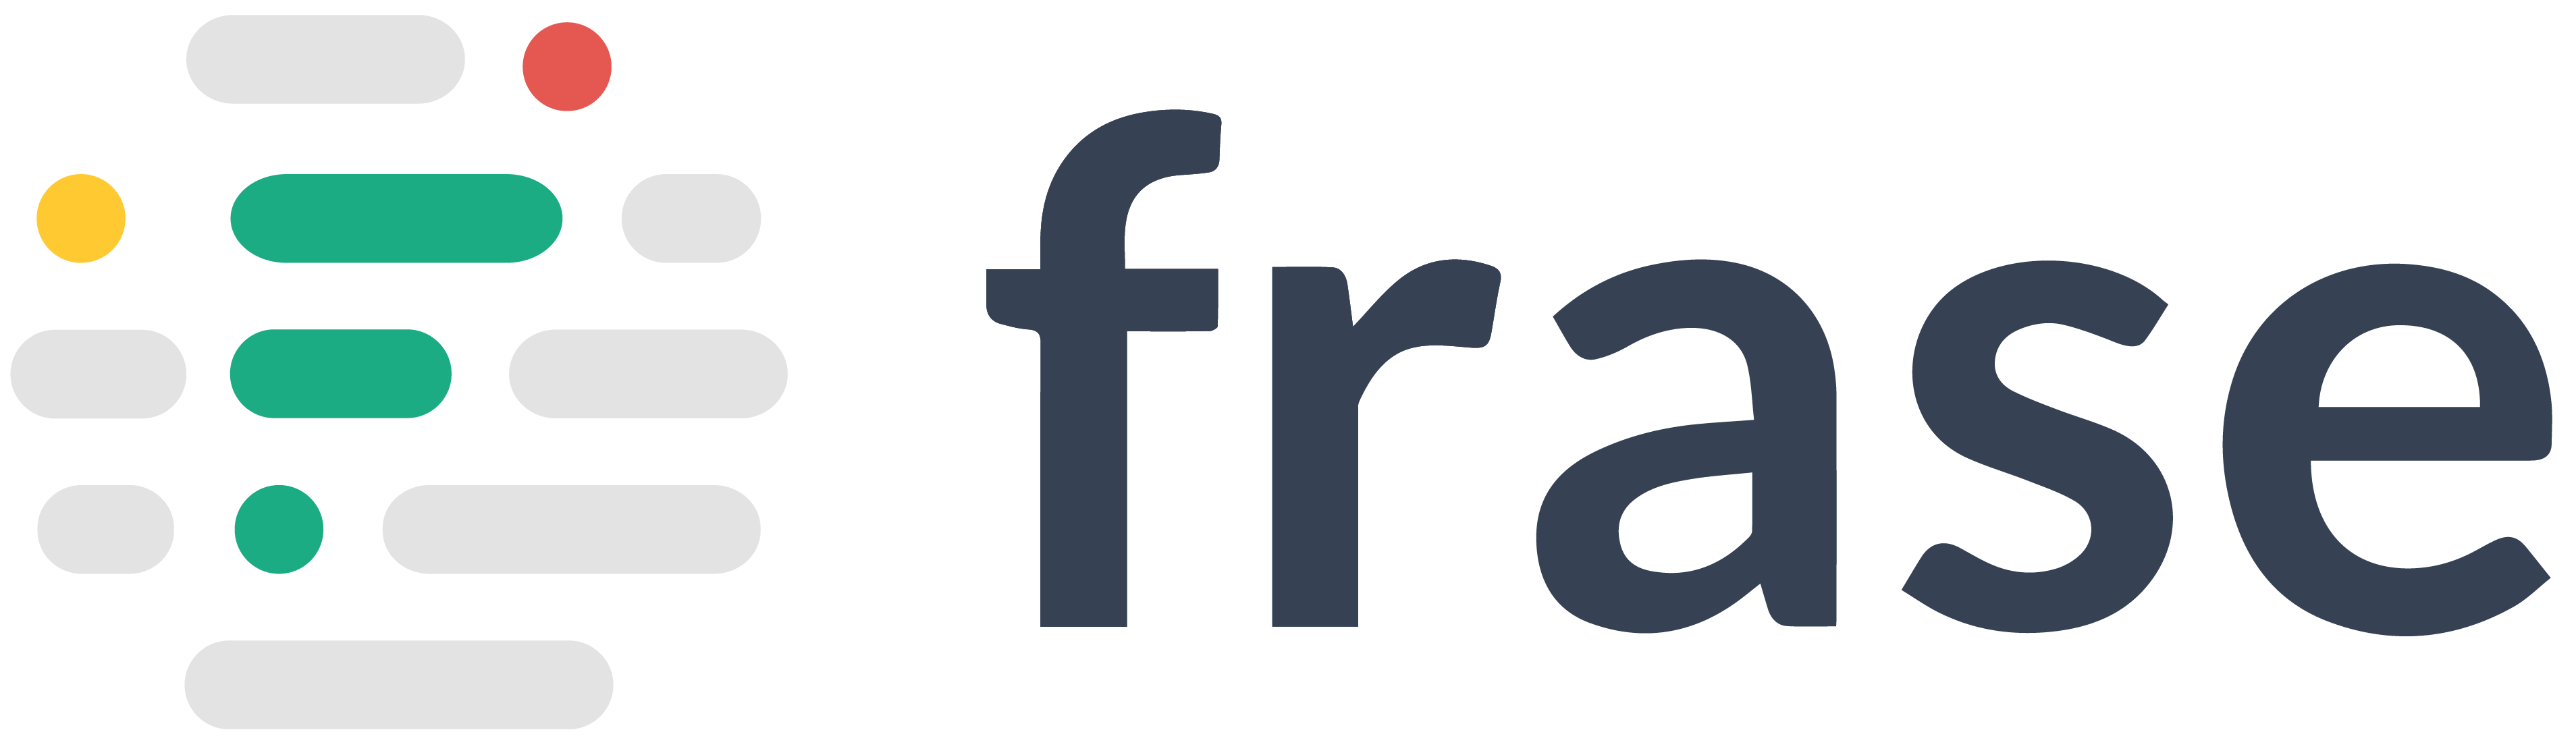 Frase-Logo